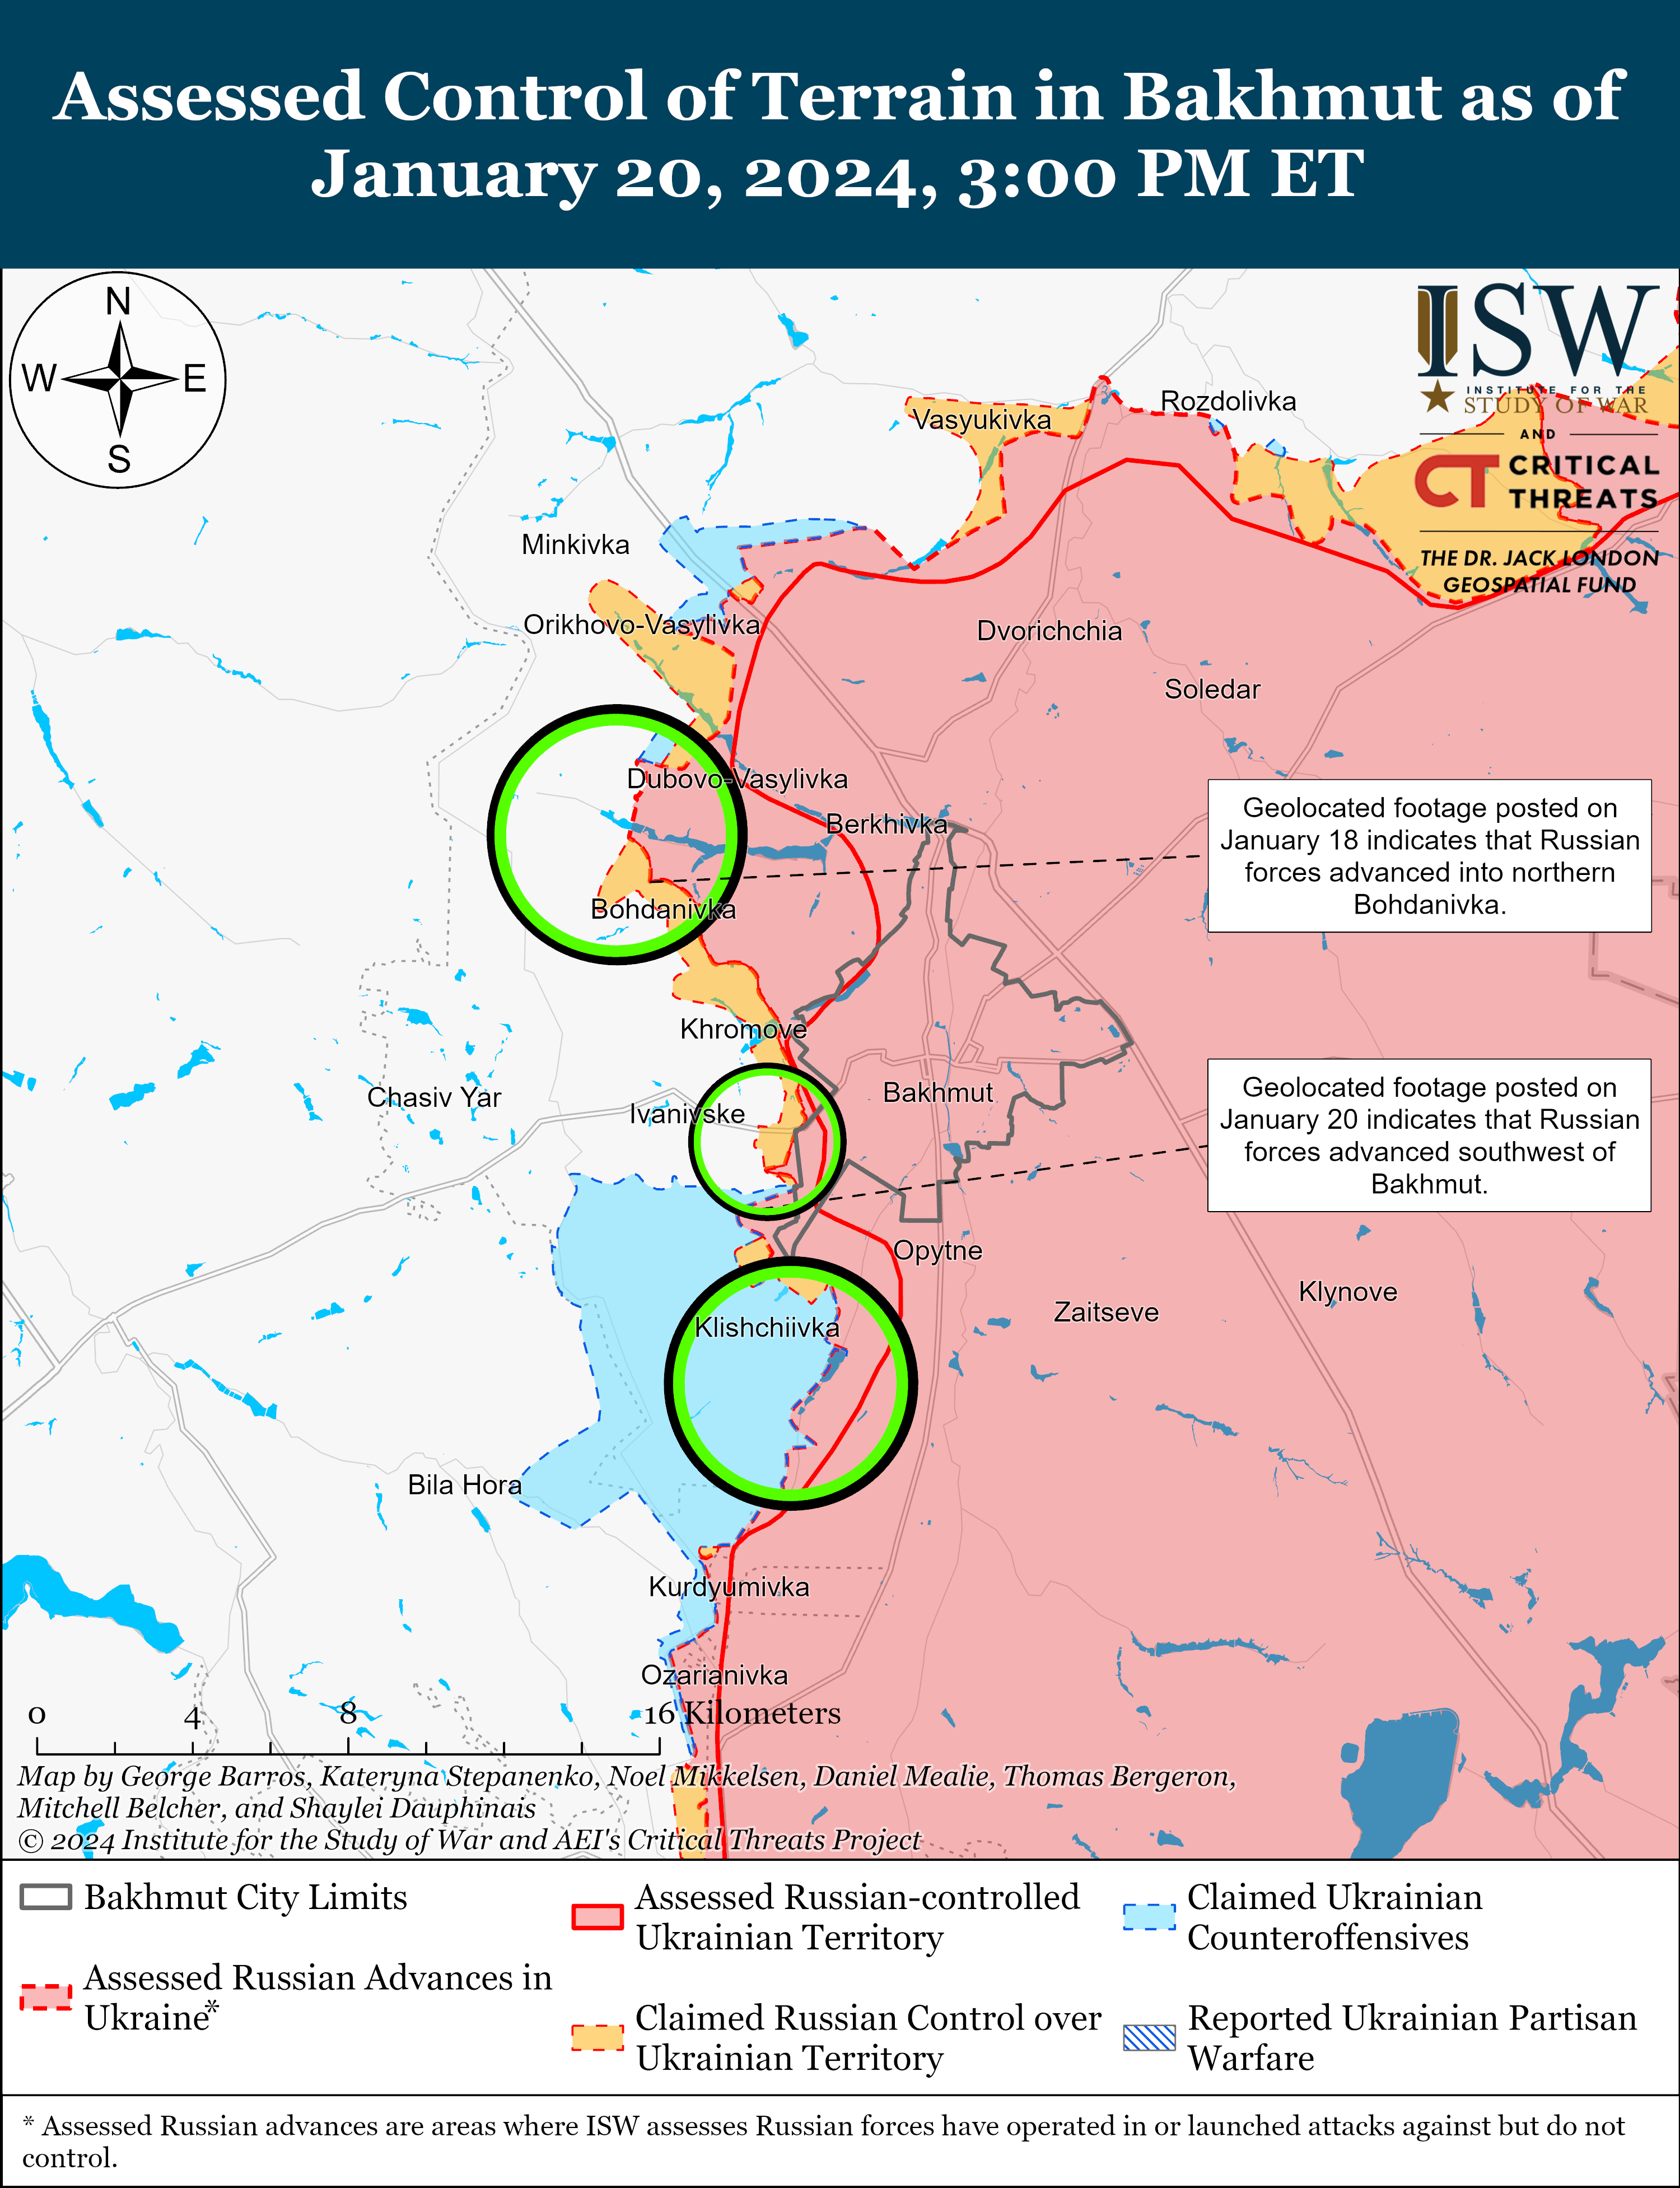 Війська РФ, ймовірно, просунулися східніше Куп'янська: карти боїв ISW